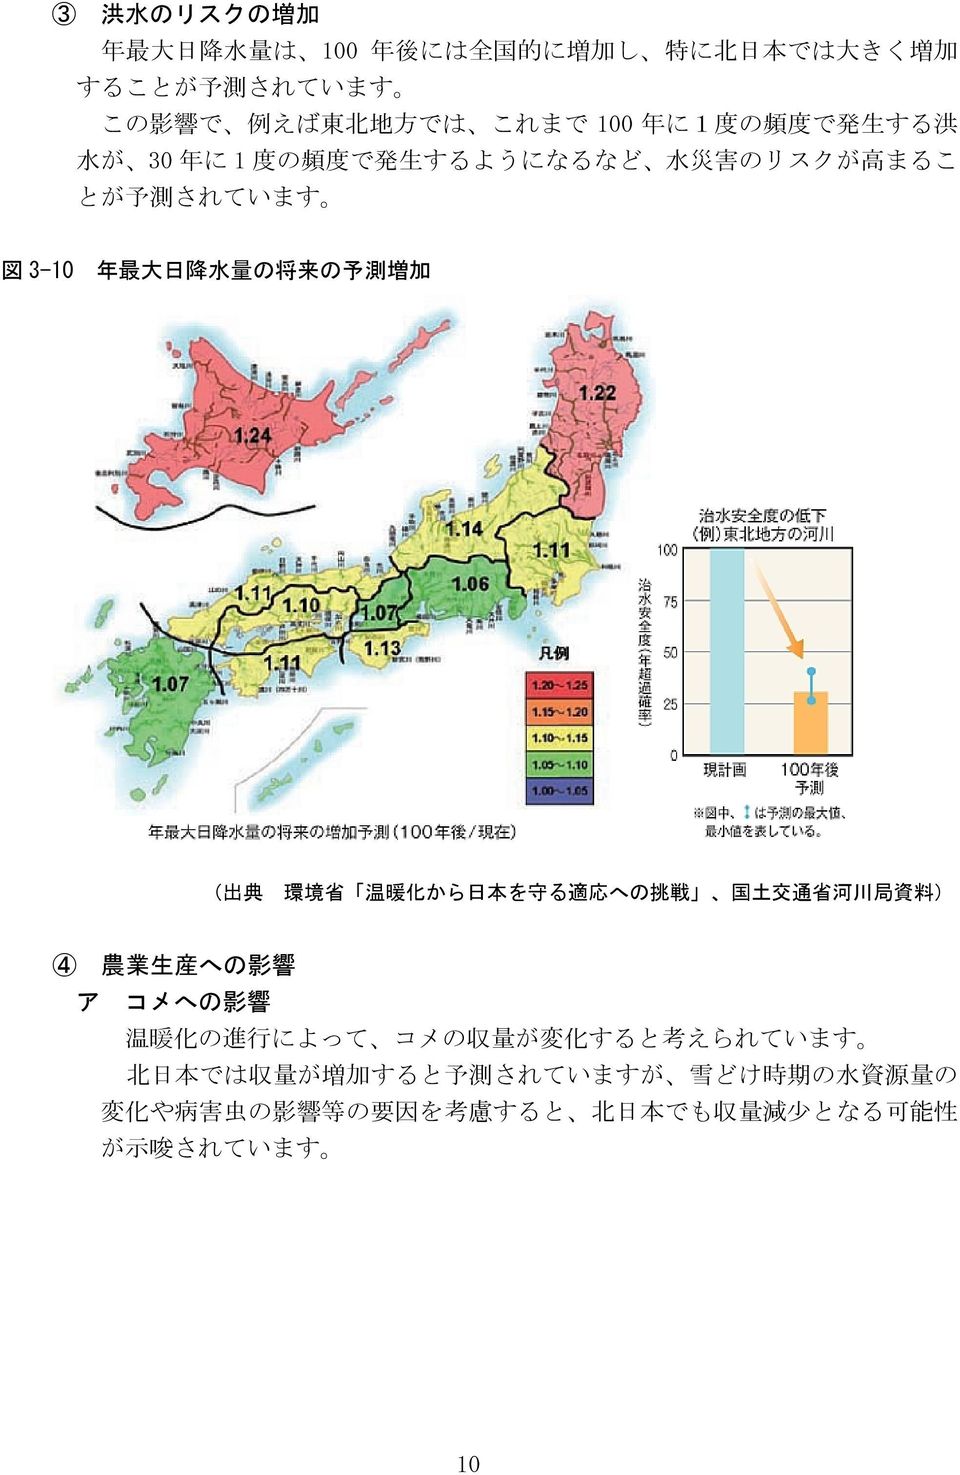 典 環 境 省 温 暖 化 から 日 本 を 守 る 適 応 への 挑 戦 国 土 交 通 省 河 川 局 資 料 ) 4 農 業 生 産 への 影 響 ア コメへの 影 響 温 暖 化 の 進 行 によって コメの 収 量 が 変 化 すると 考 えられています